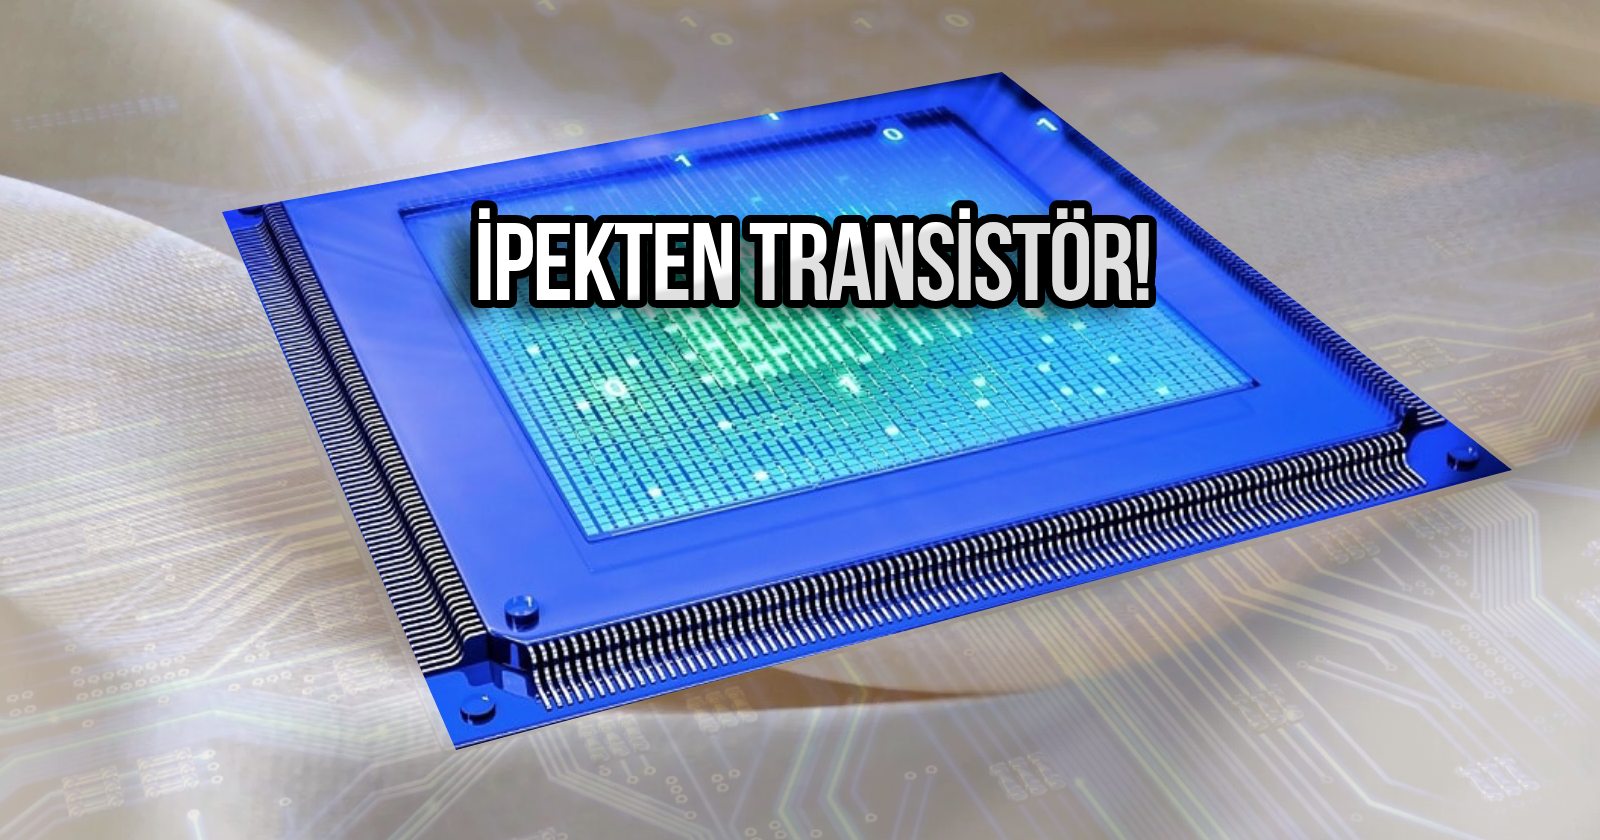 İpek transistör geliştirildi! Biyolojik işlemci için önemli adım